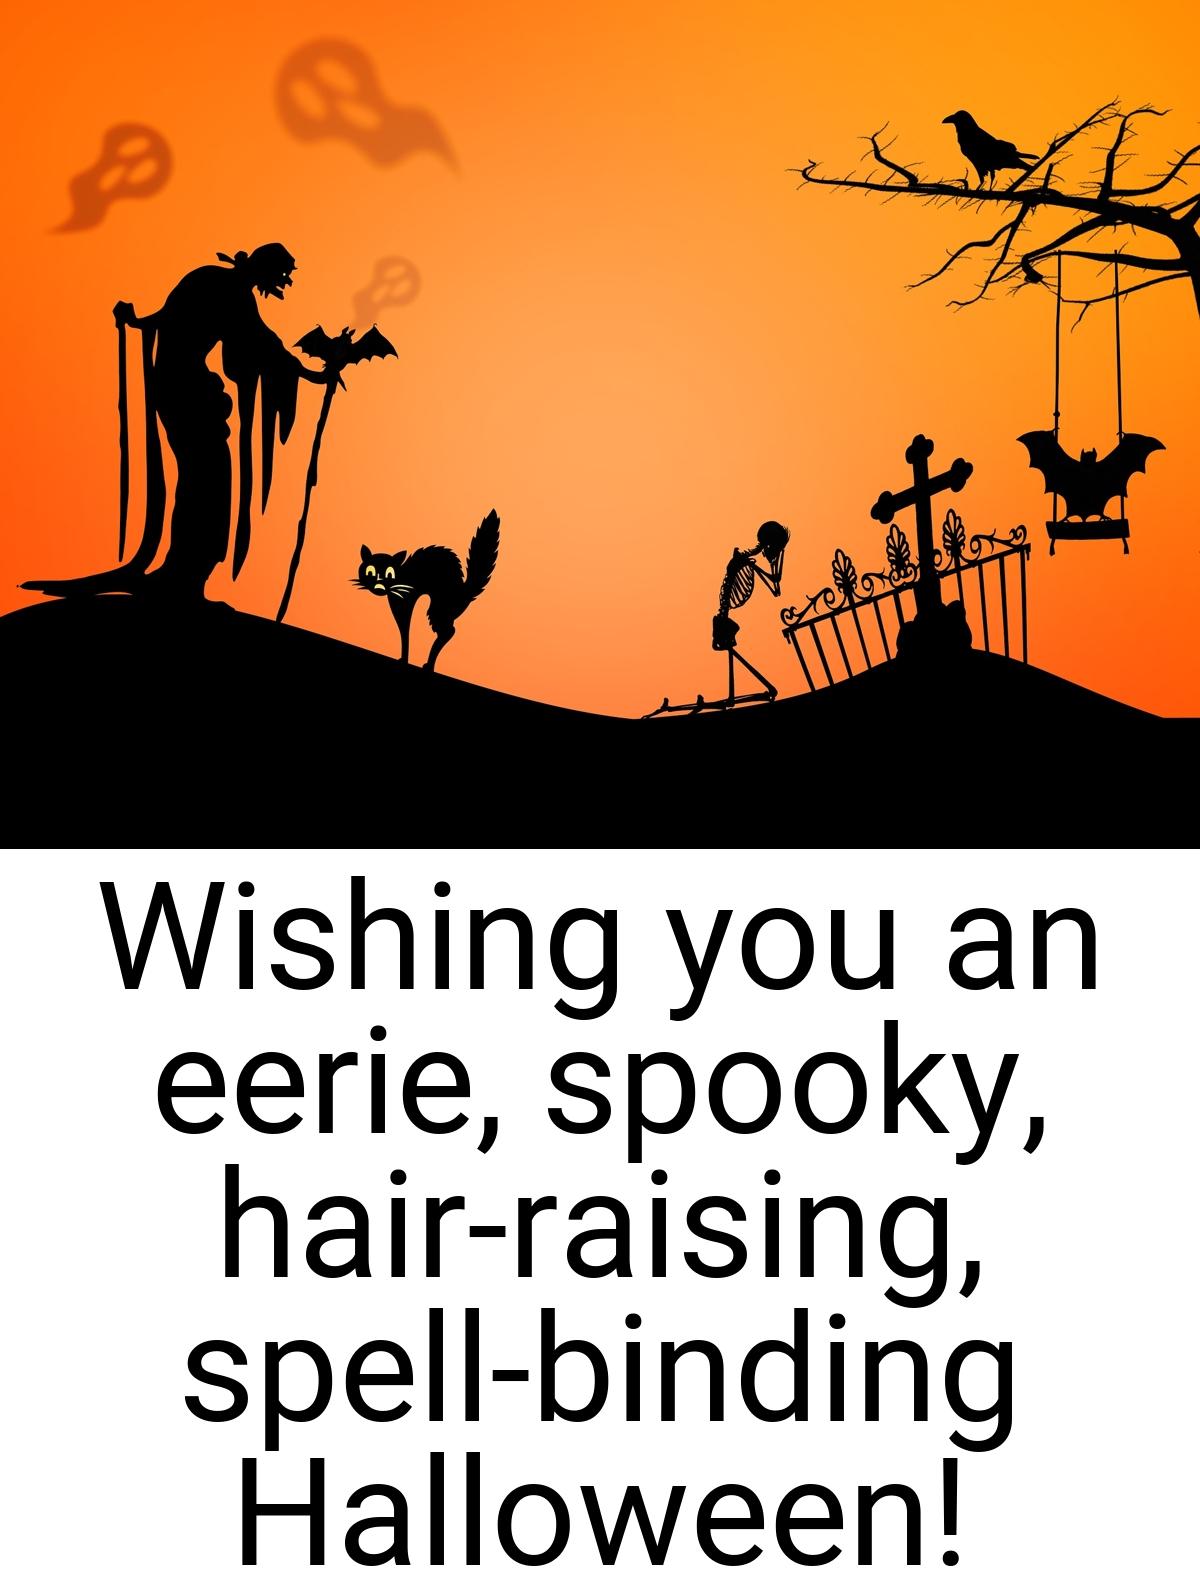 Wishing you an eerie, spooky, hair-raising, spell-binding